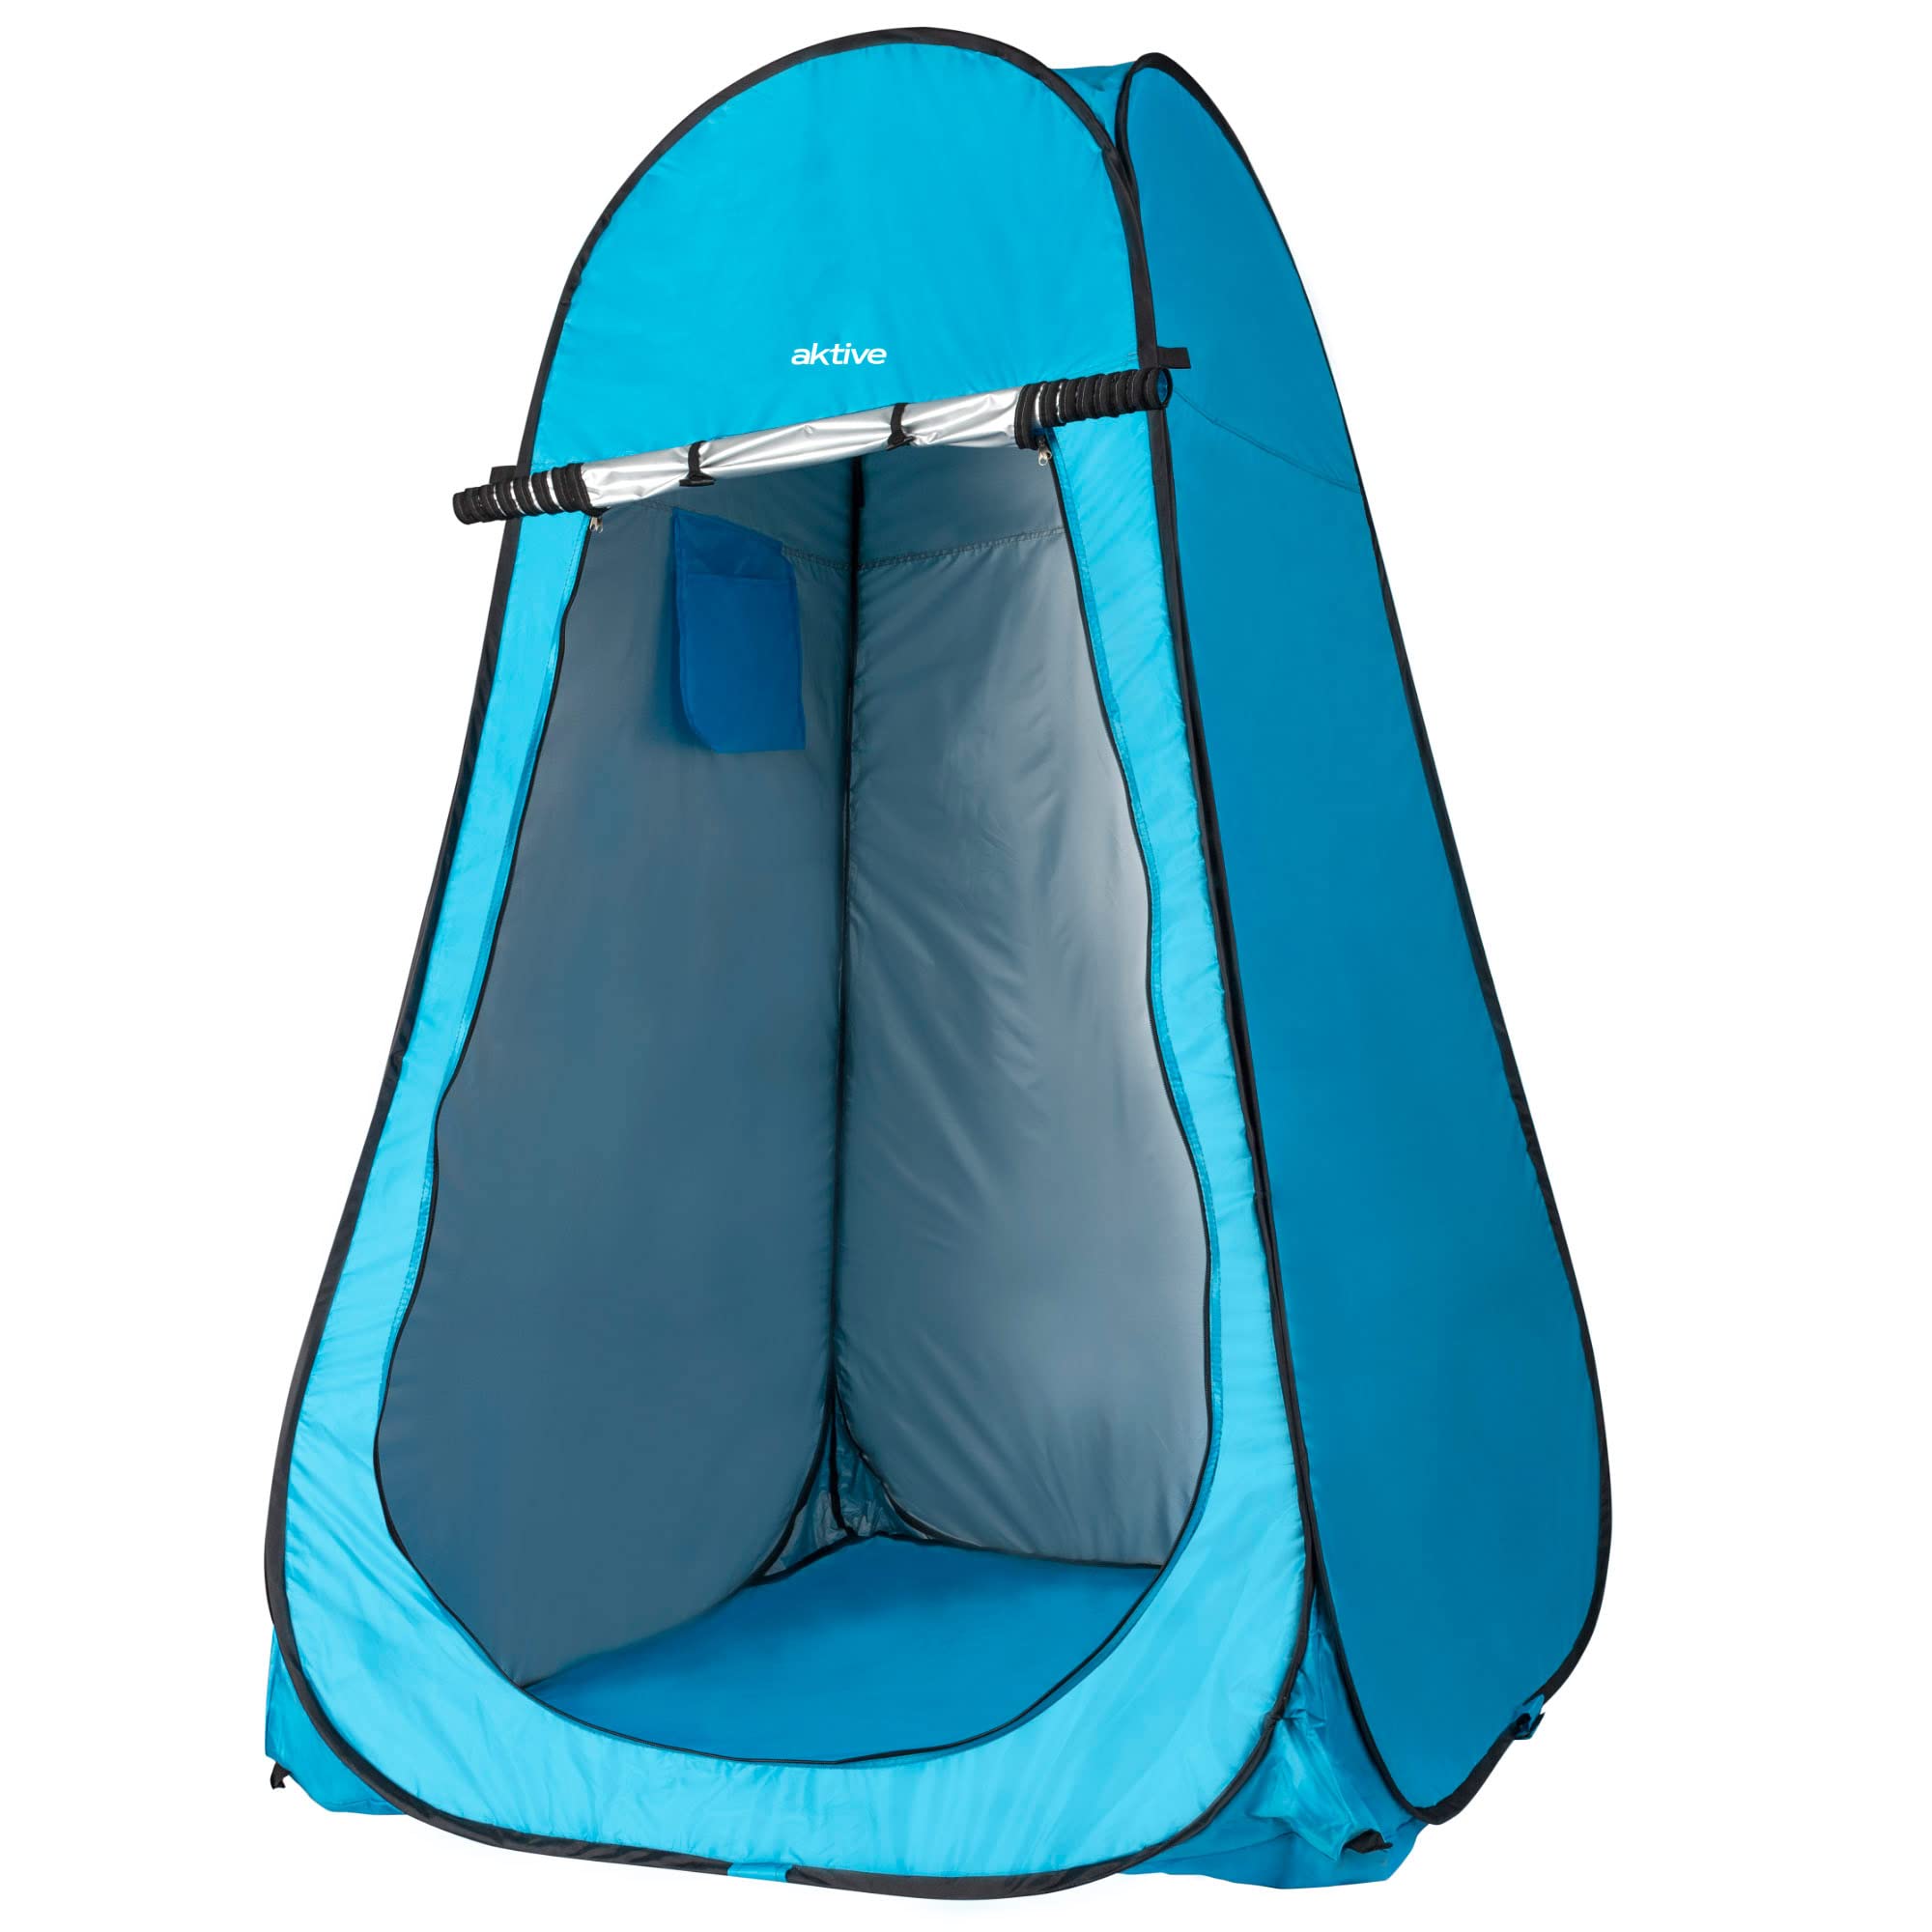 AKTIVE 62163 Wickelzelt für Camping mit Boden 120x120x190 cm, Blau/Türkis, 120 x 120 x 190 cm